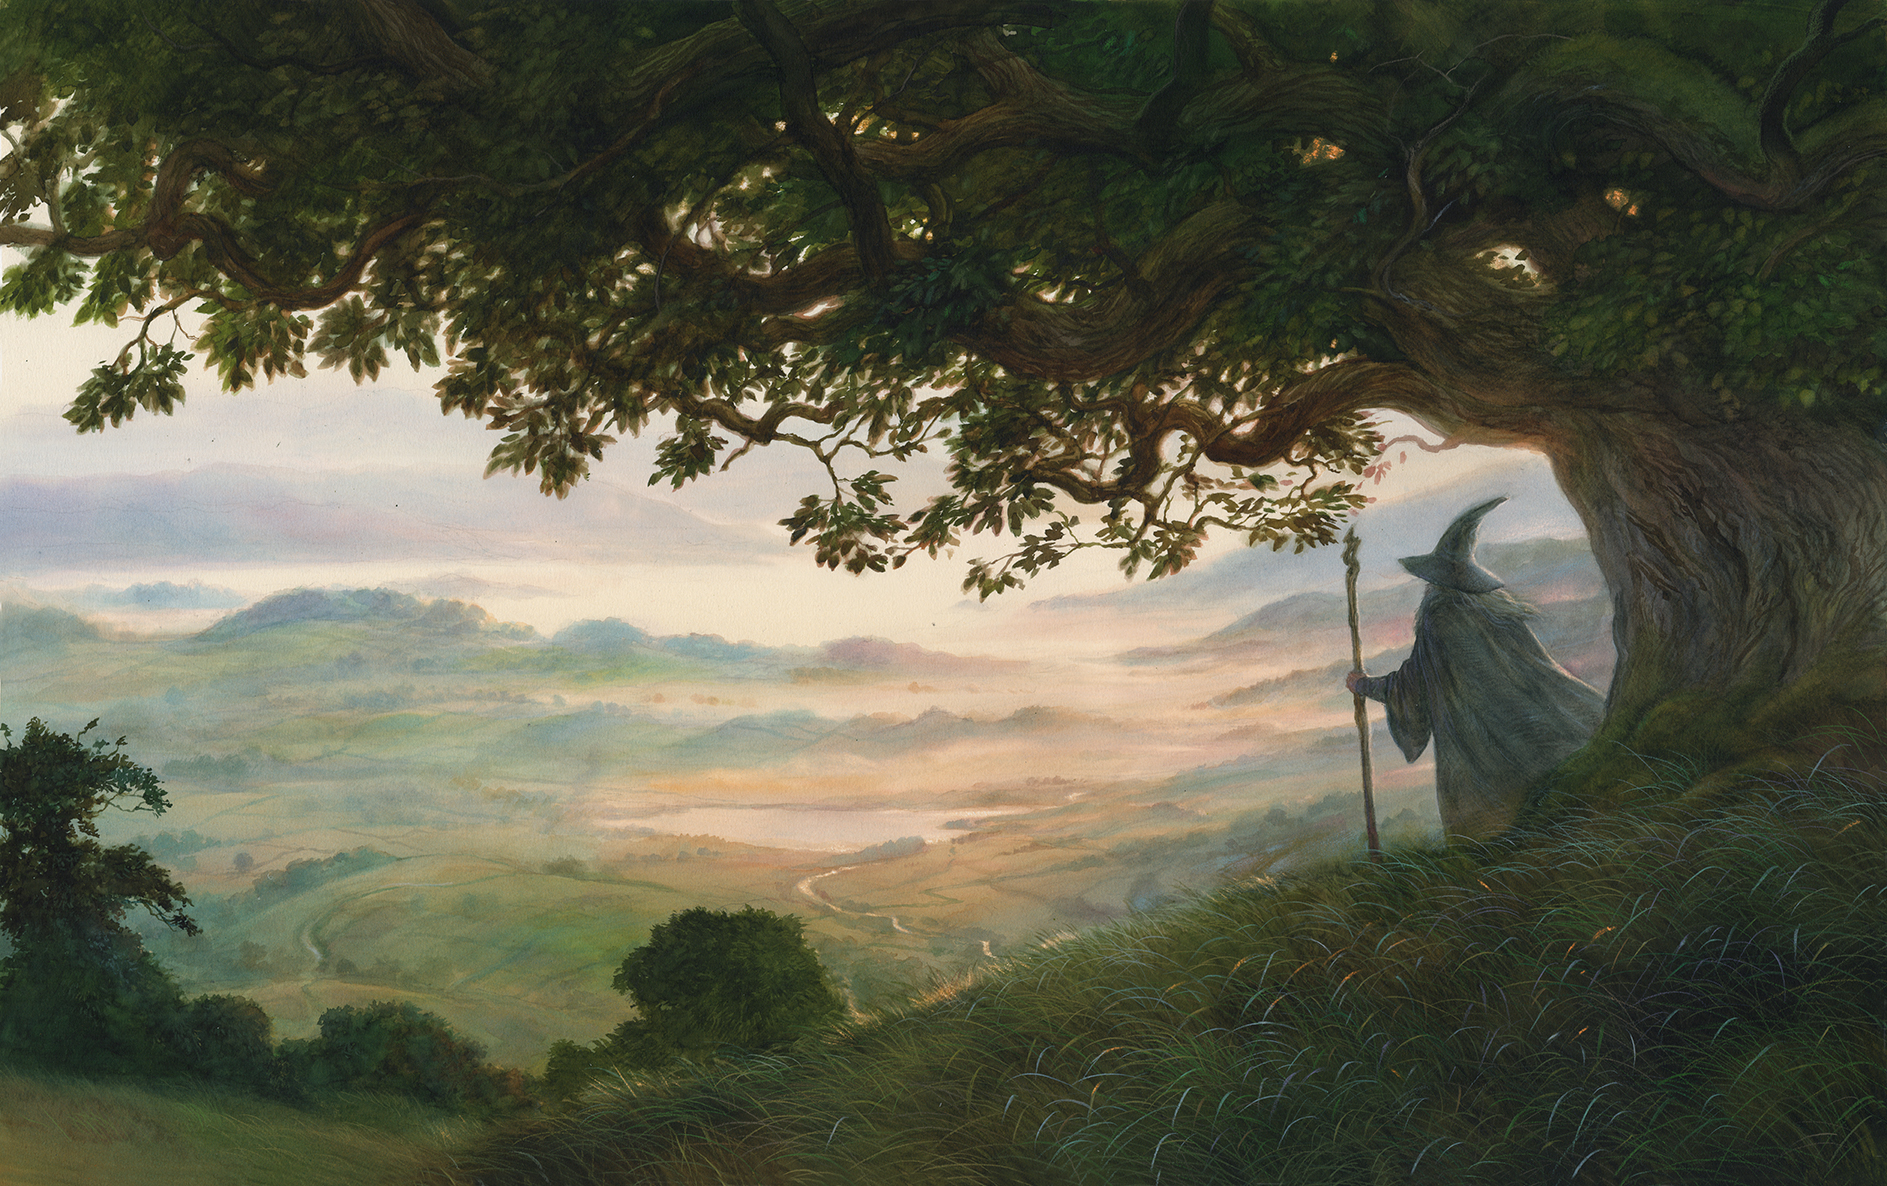 A cinquant’anni dalla morte di J. R. R. Tolkien. Intervista con lo scrittore e studioso tolkieniano Paolo Gulisano